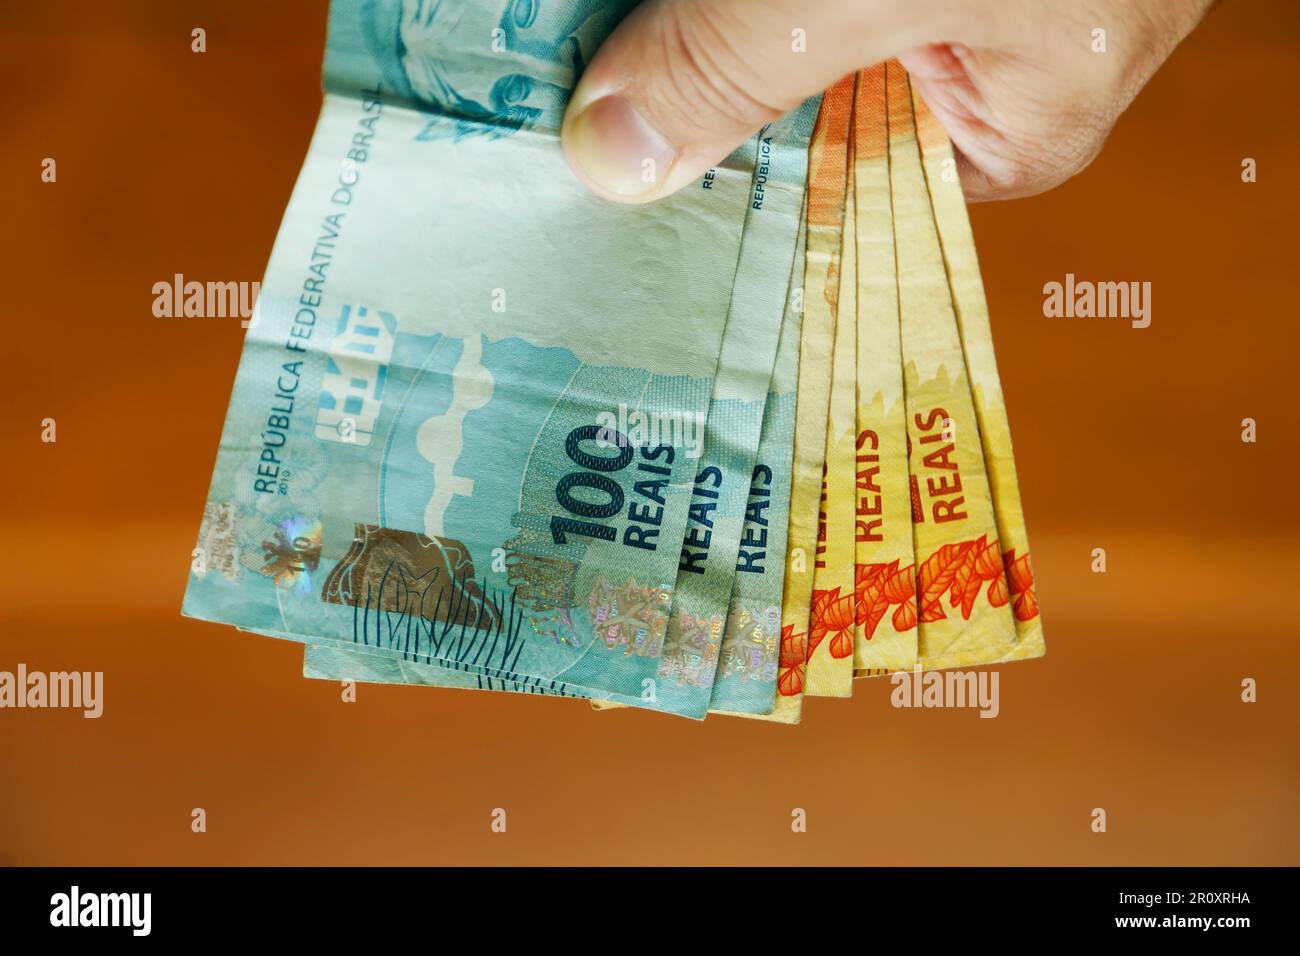 recevoir un paiement avec de l'argent du brésil - plusieurs centaines de billets Banque D'Images